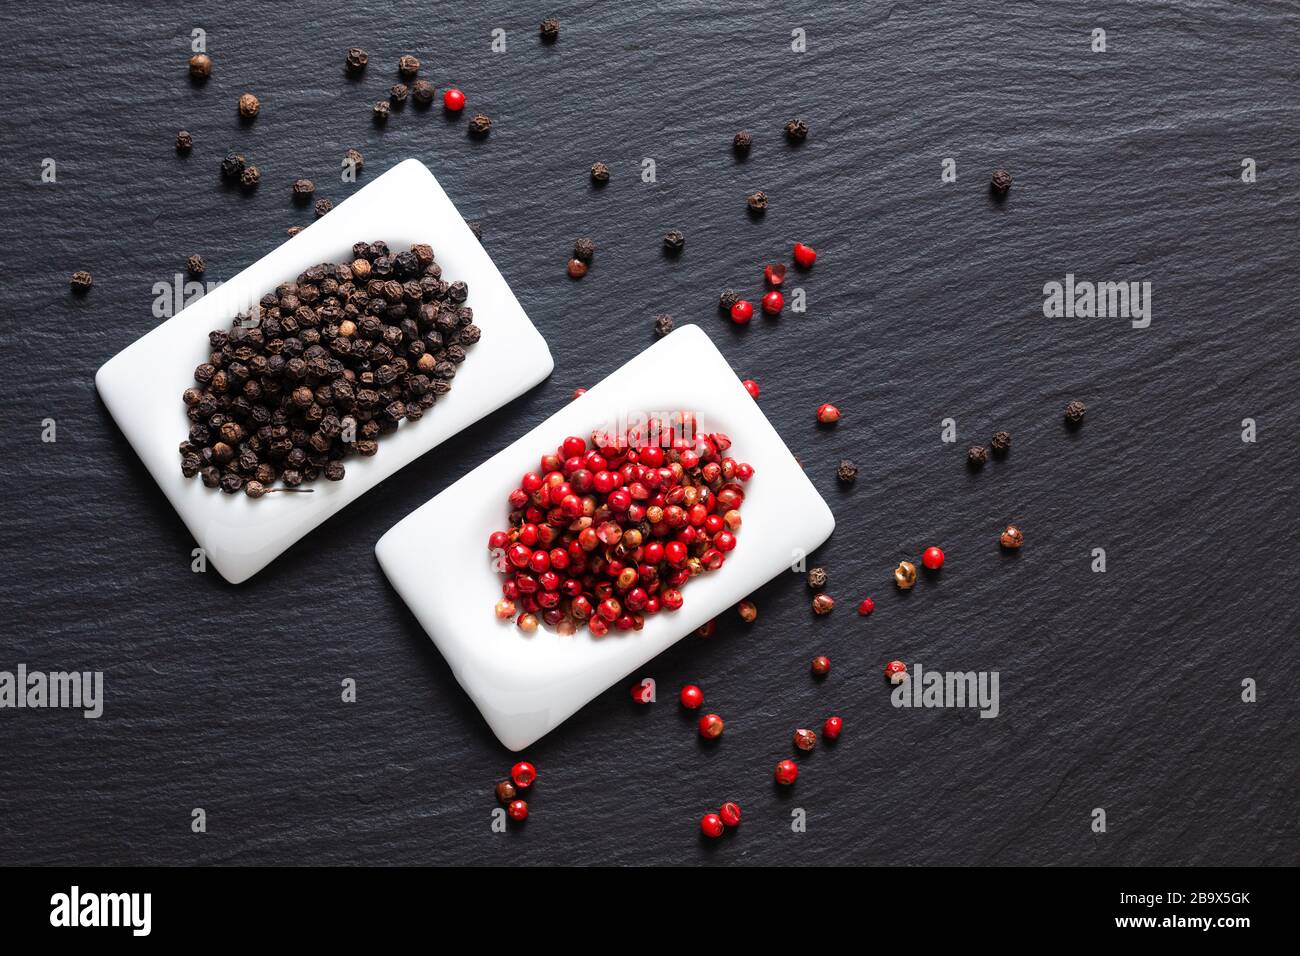 Concept d'ingrédient alimentaire sain poivrons noirs biologiques et grains de poivre rouge dans une tasse en céramique carrée sur un tableau en pierre d'ardoise noire avec espace de copie Banque D'Images